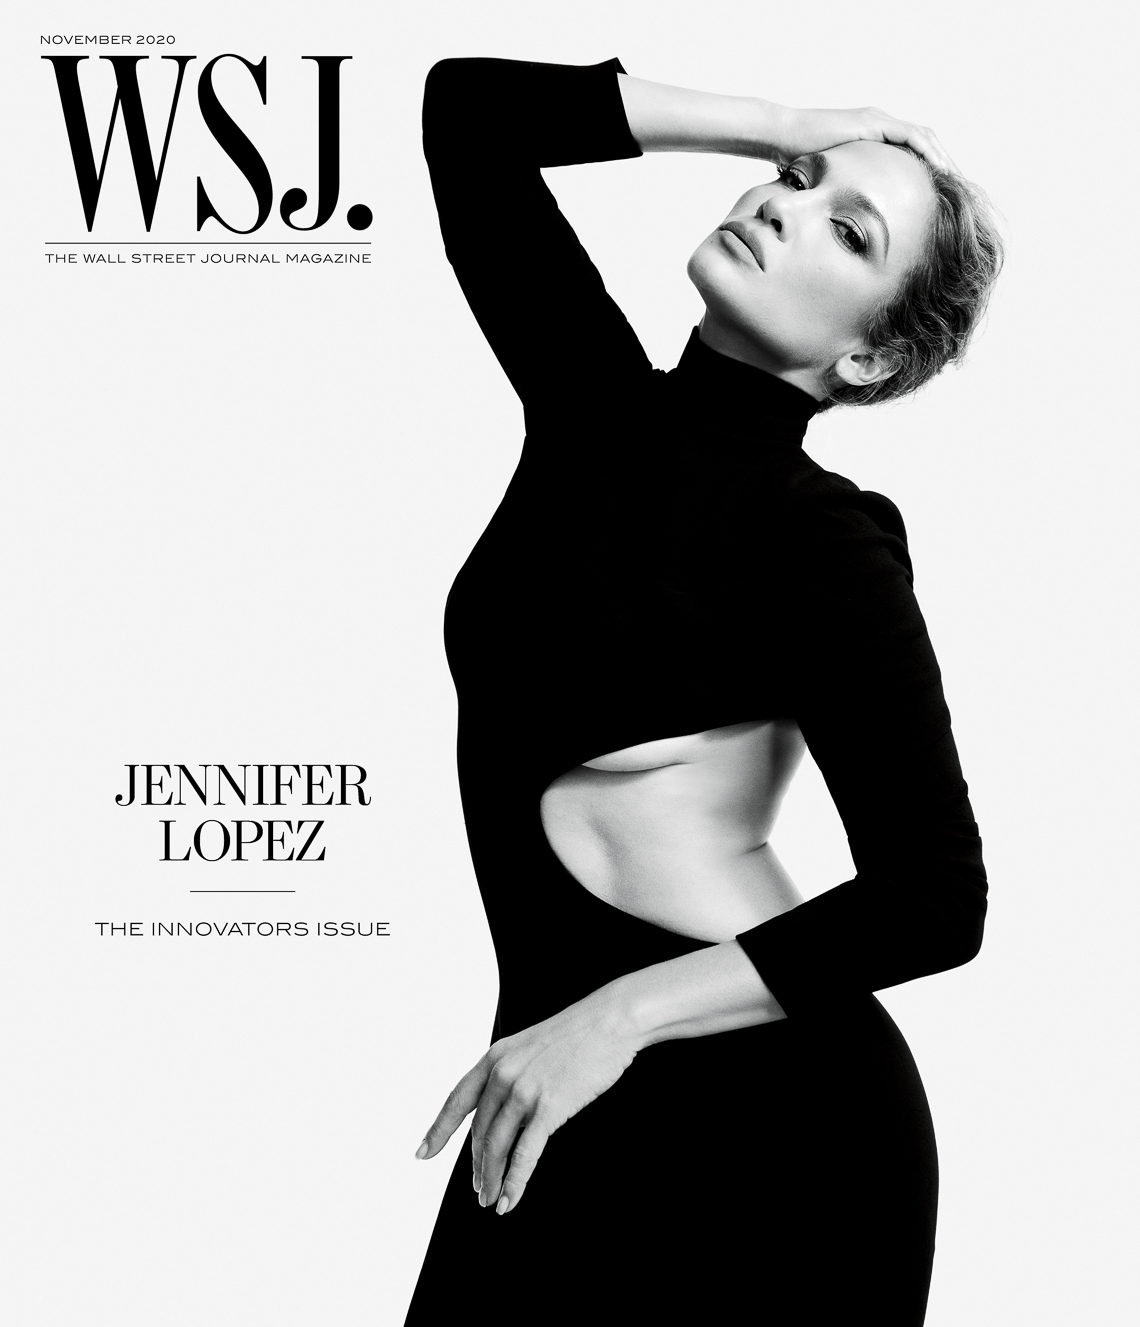 Gray Sorrenti for WSJ Magazine with Jennifer Lopez